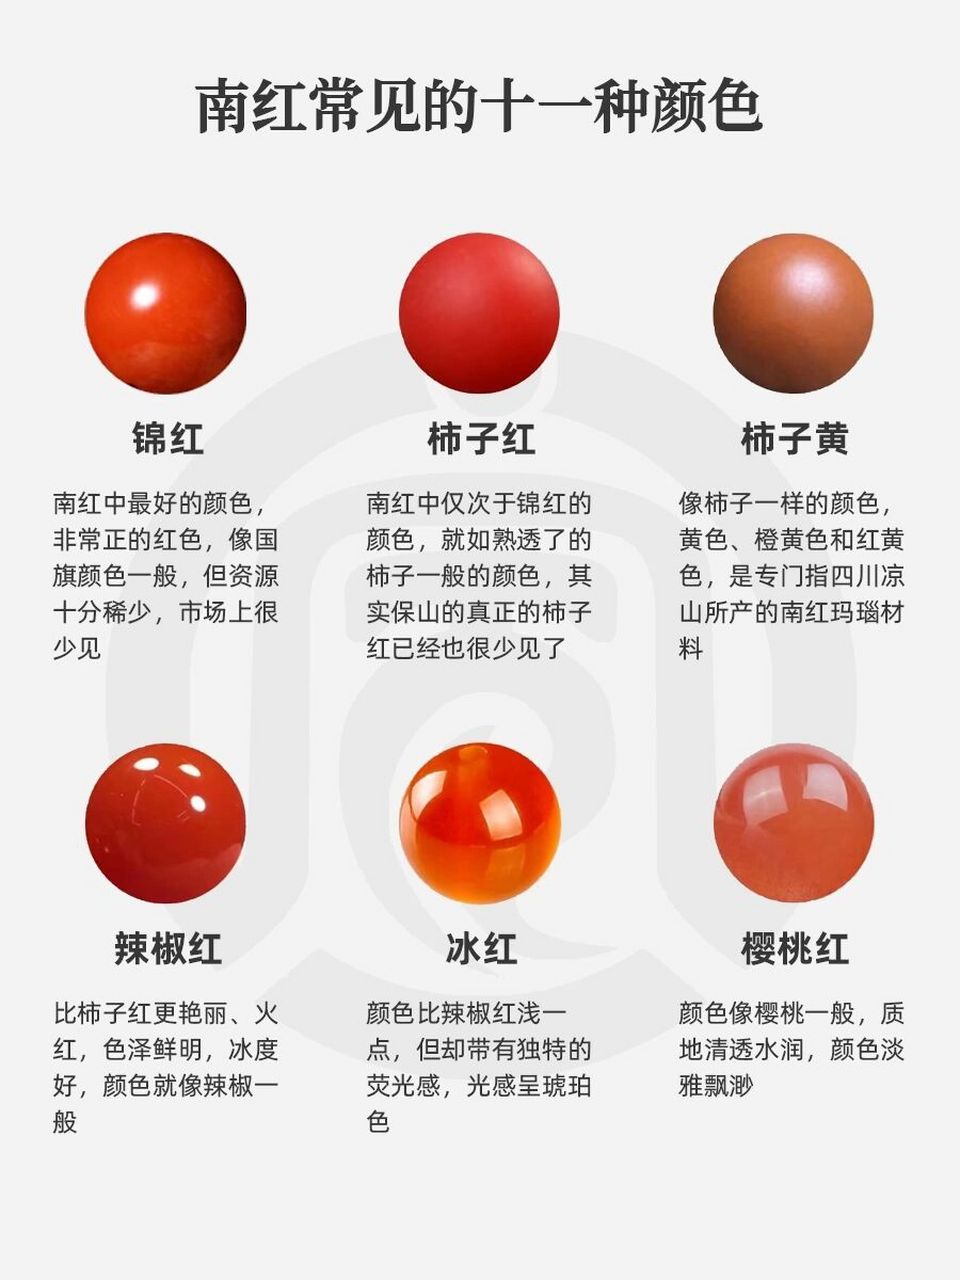 两张图看懂南红的常见颜色,建议收藏7515 南红,古称赤玉,质地